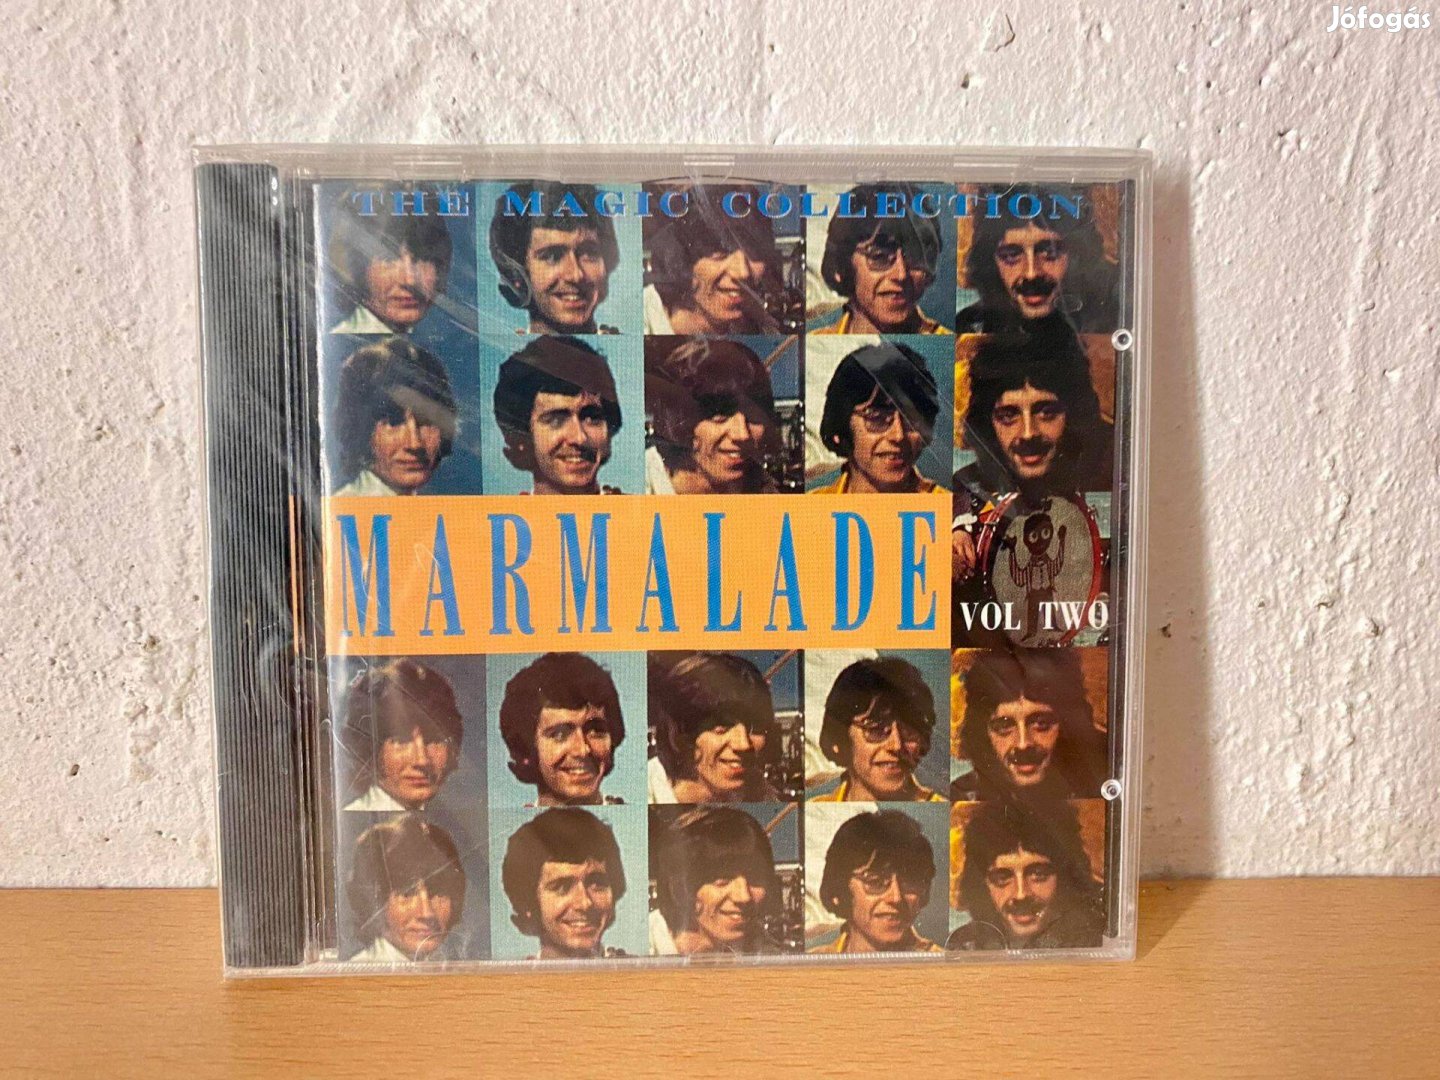 The Marmalade - Vol Two CD lemez (Bontatlan állapot!)